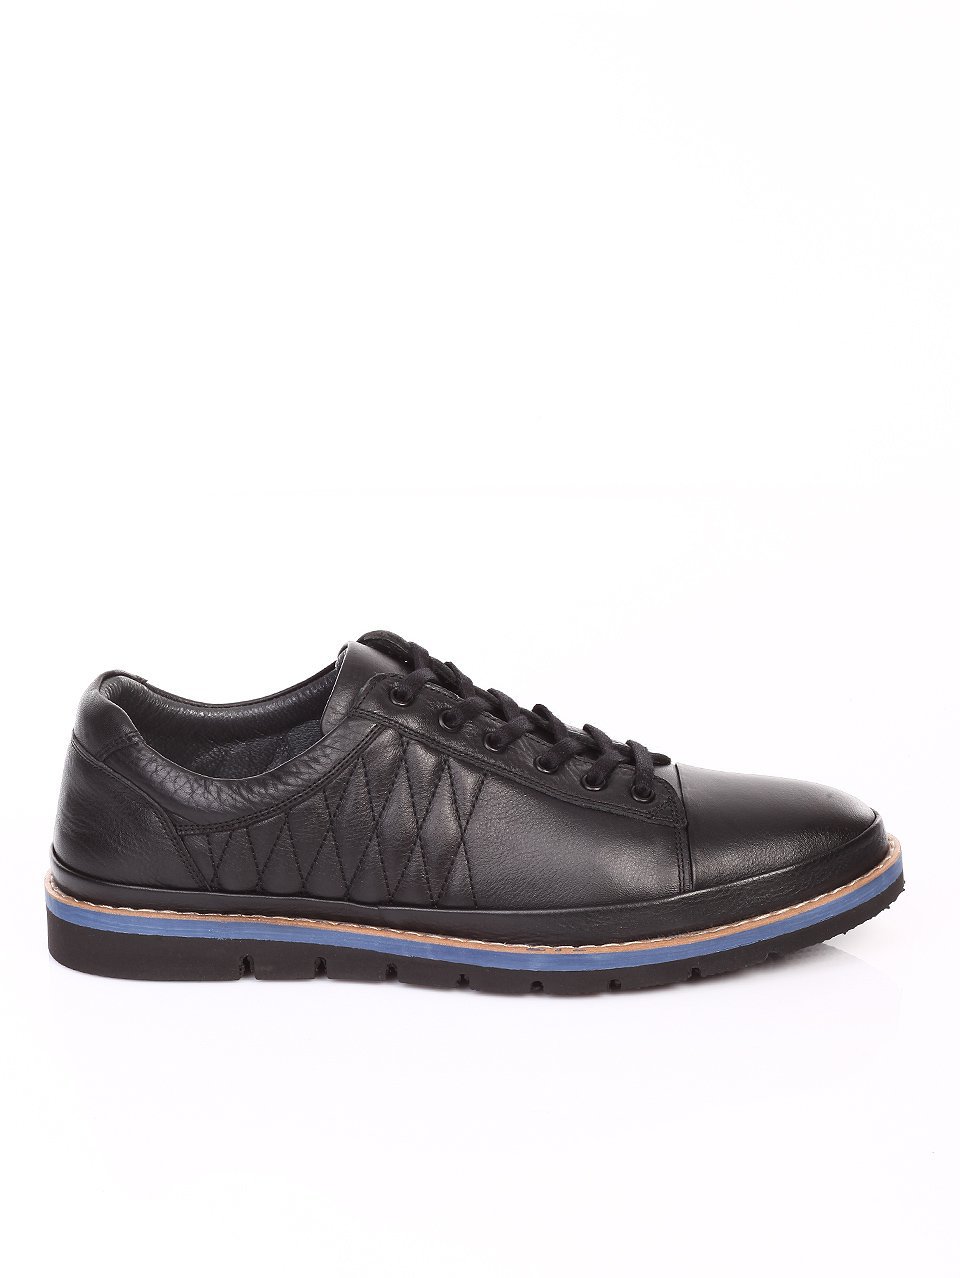 Ежедневни мъжки обувки от естествена кожа в черно 7AT-16887 black